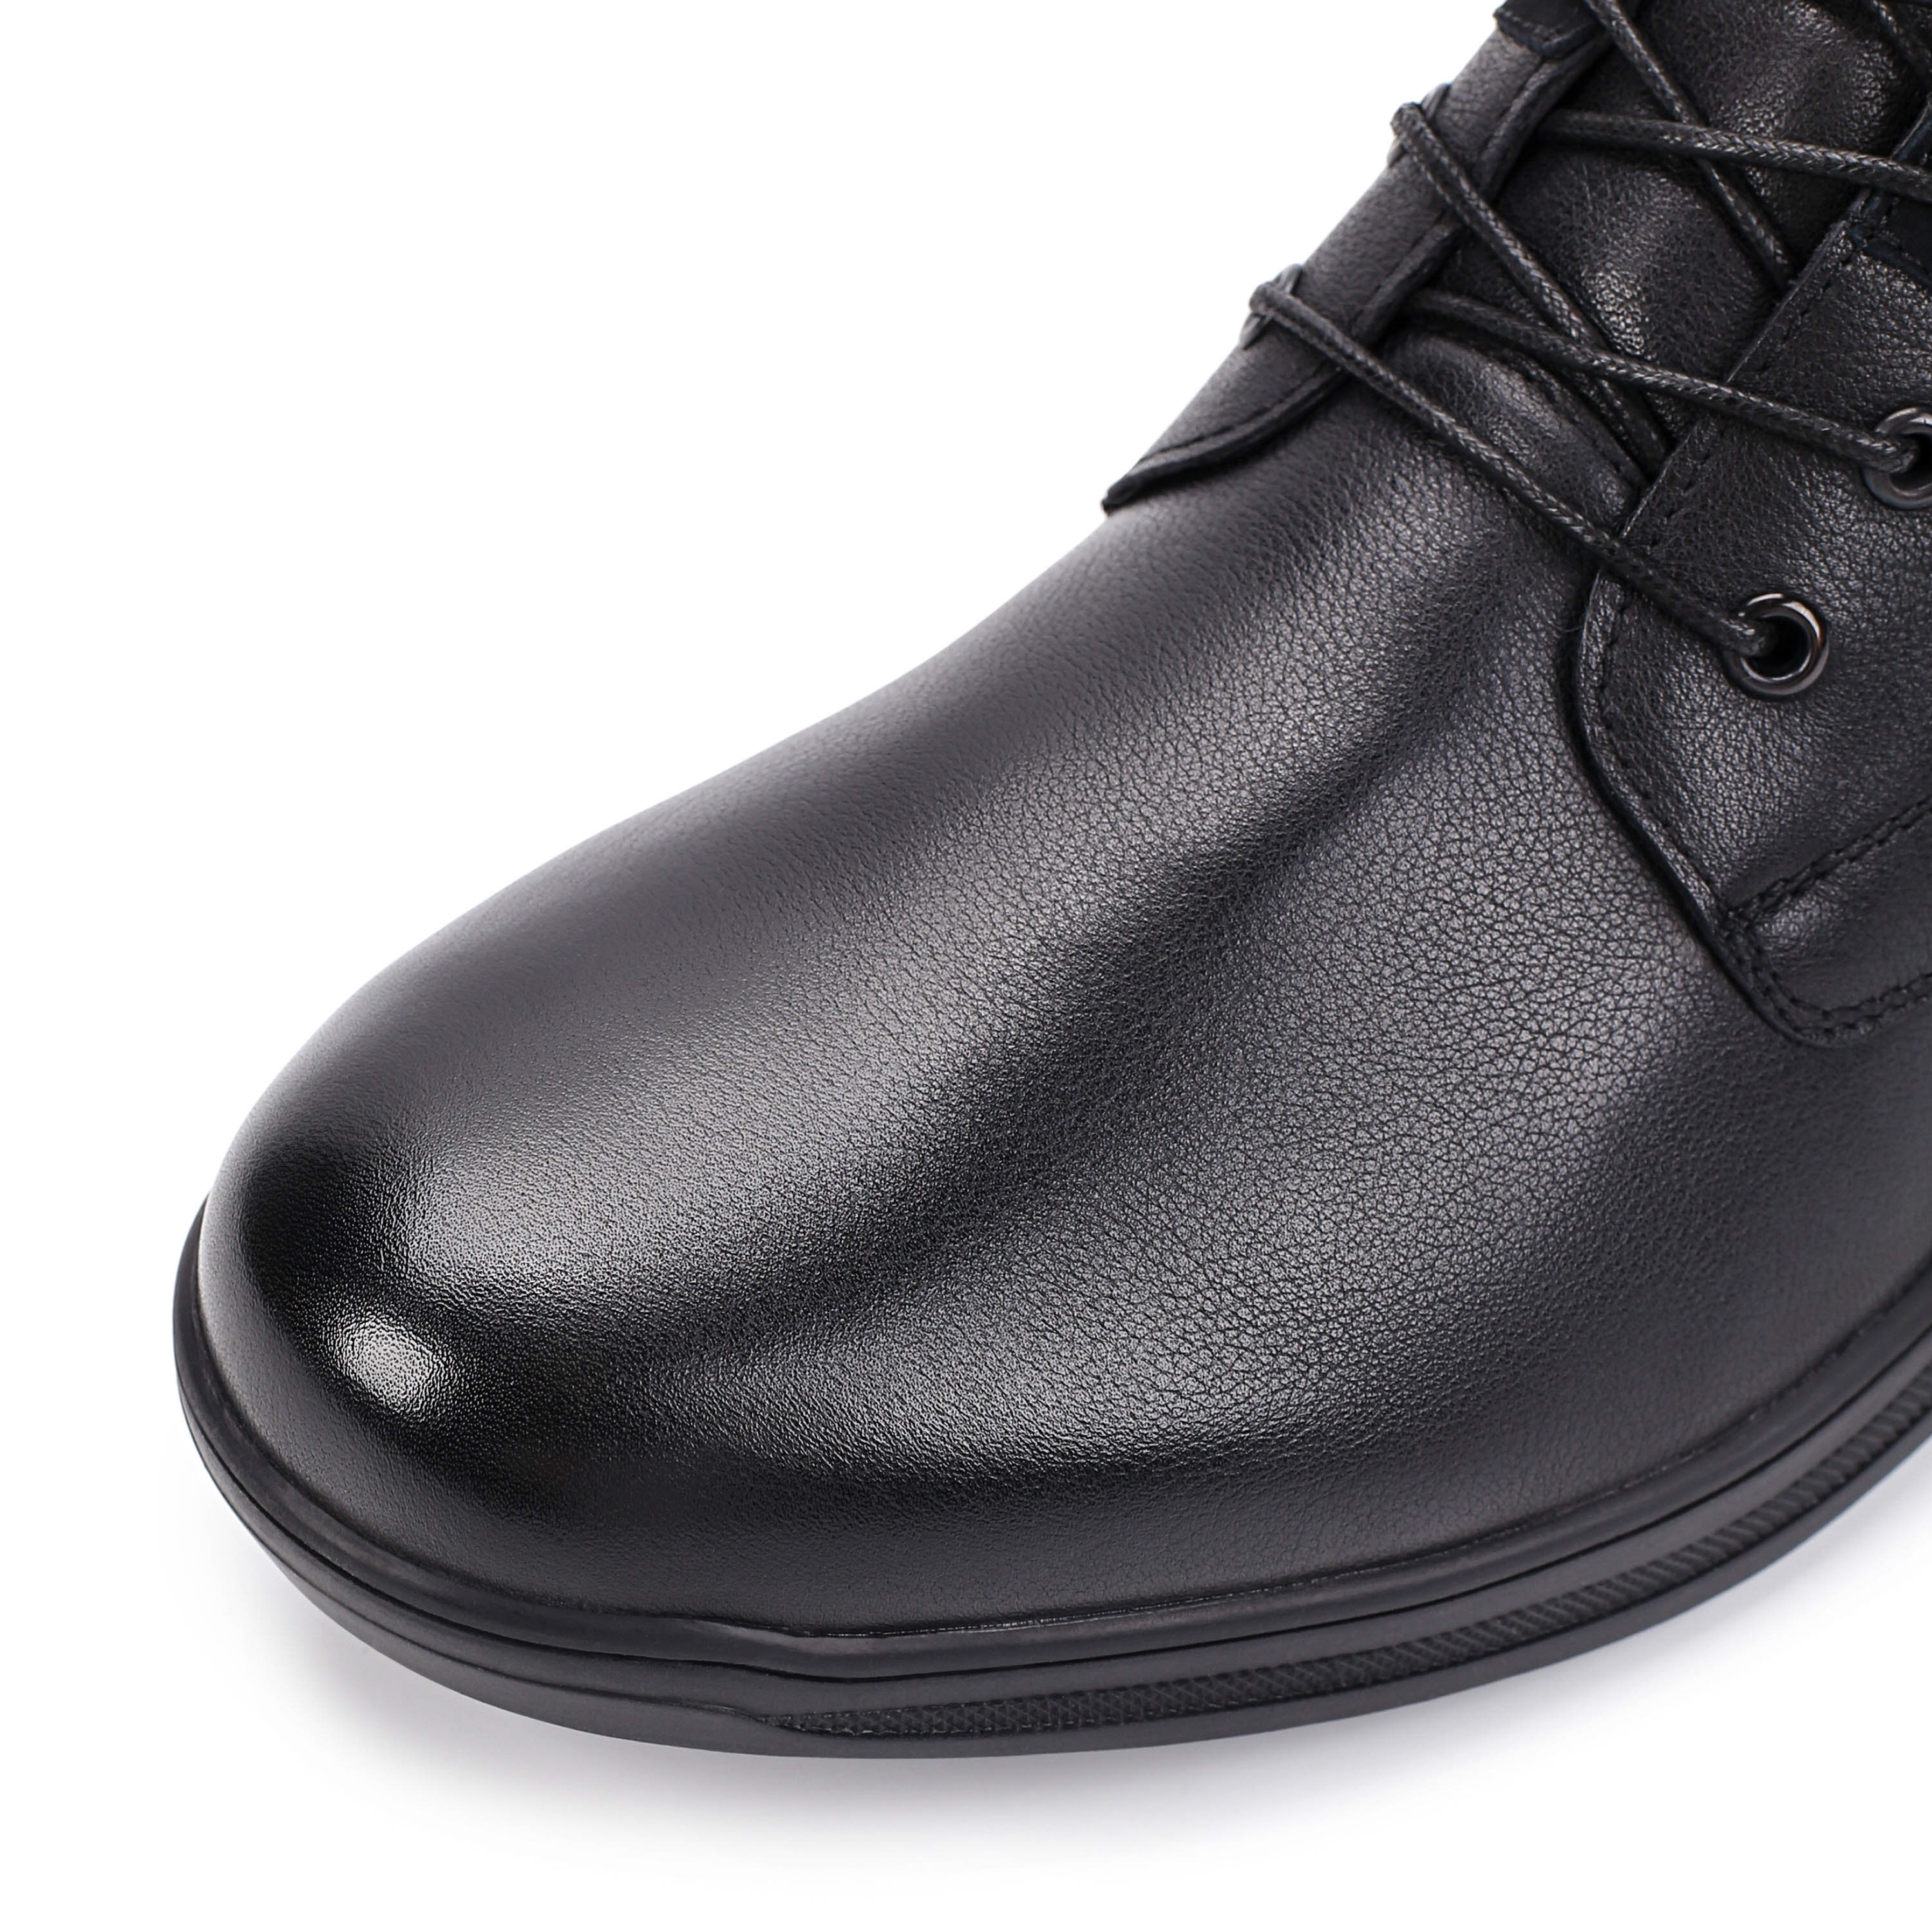 Ботинки Thomas Munz 104-158C-2102 104-158C-2102, цвет черный, размер 40 дерби - фото 6